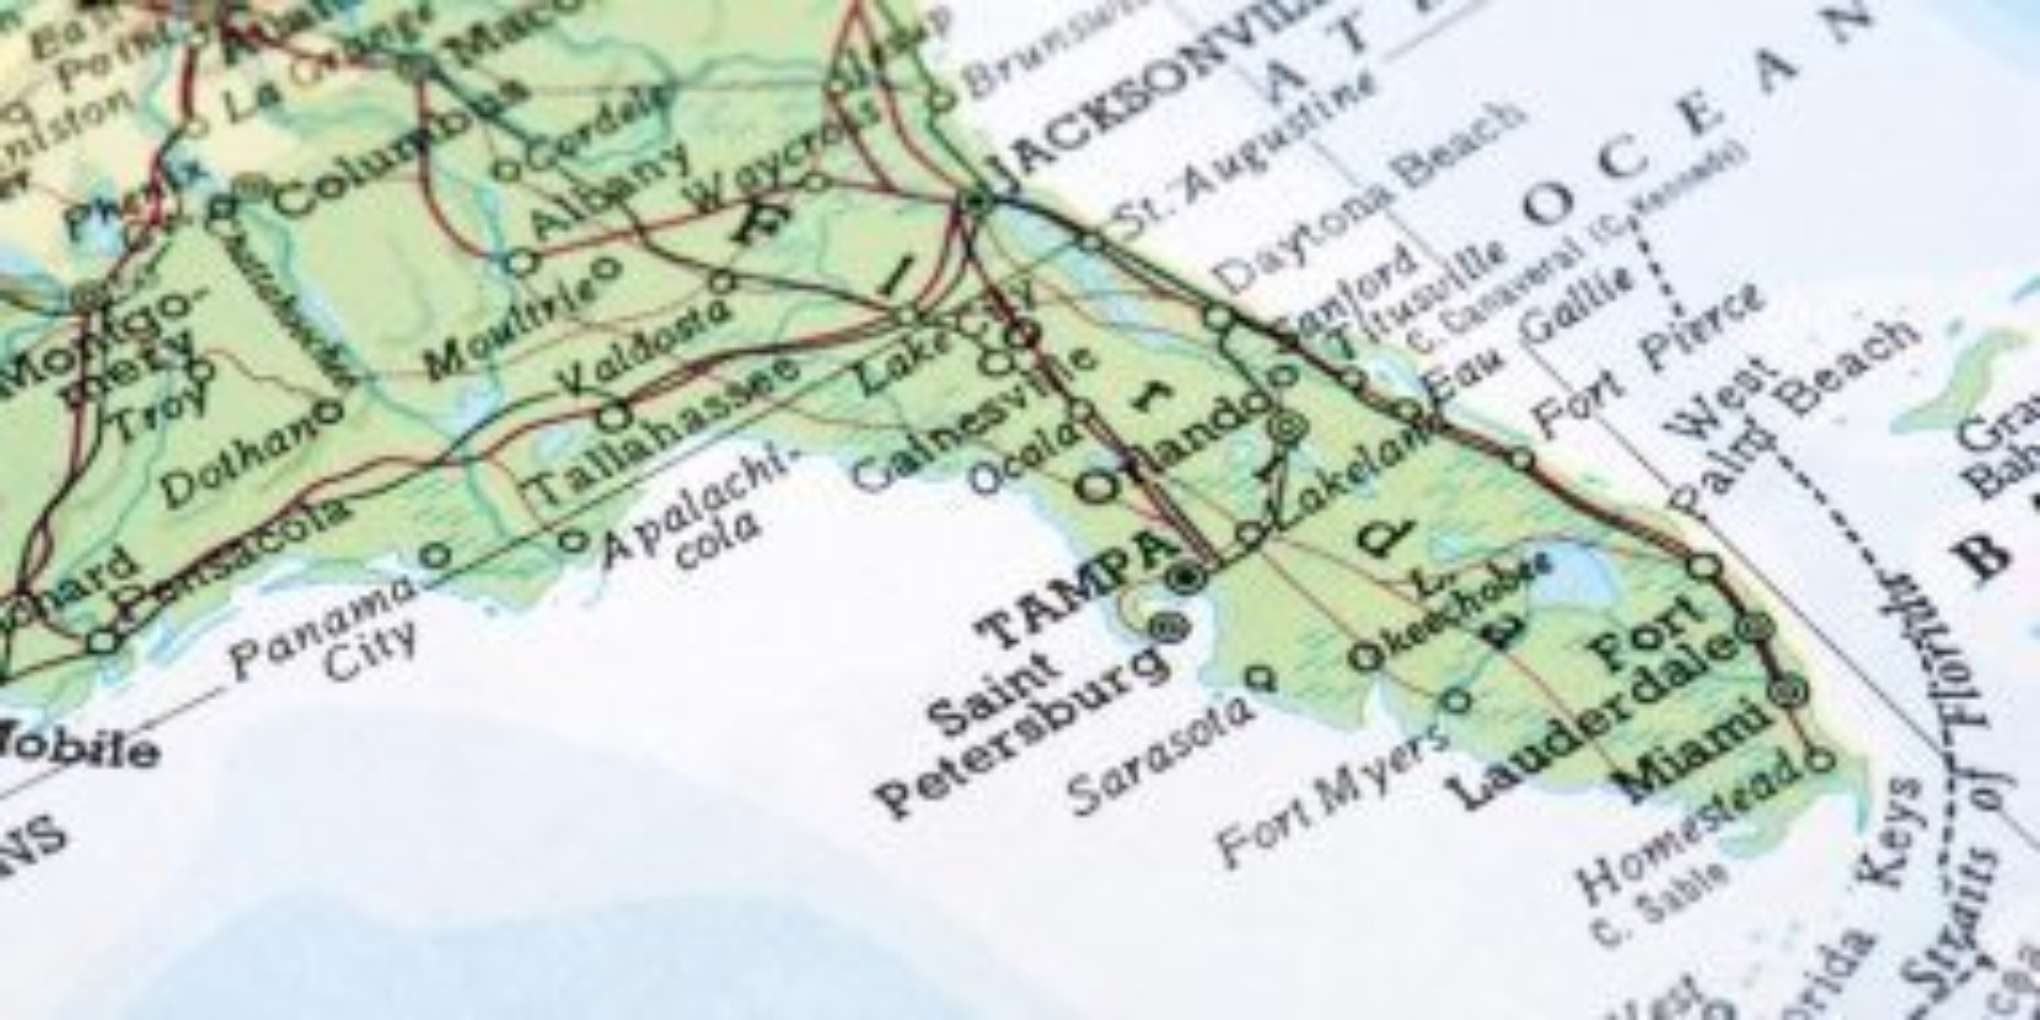 FLORIDA MAP